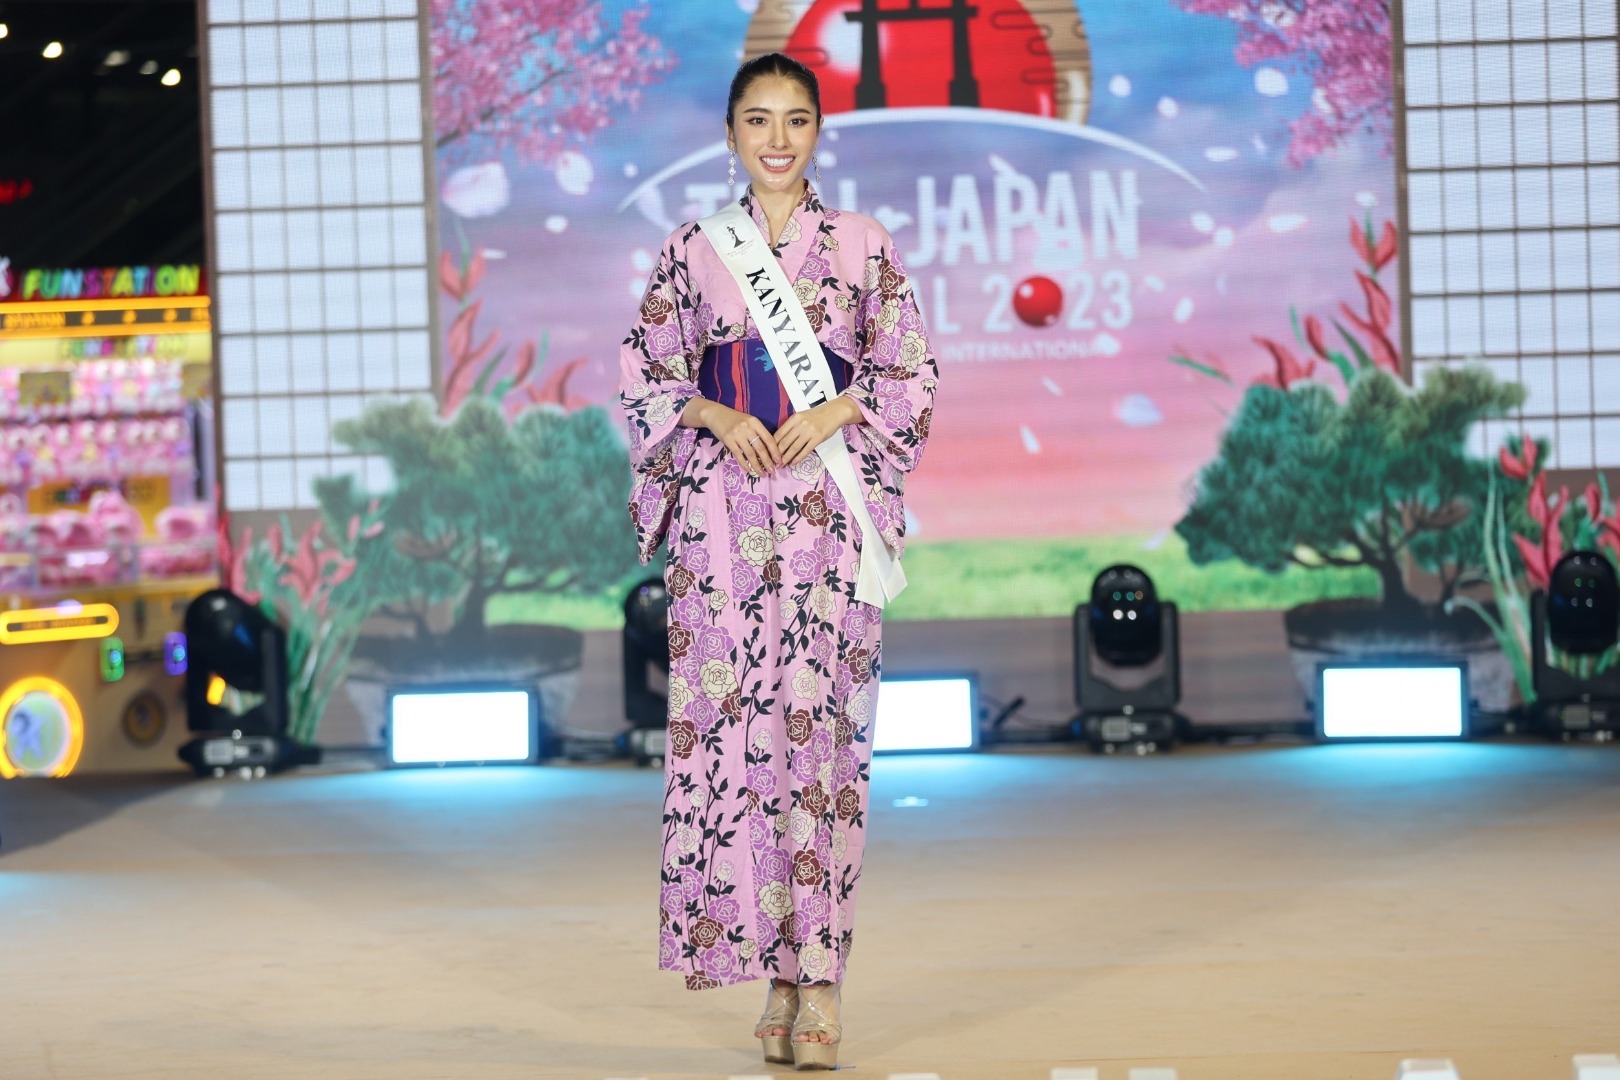 Miss Thailand International 2023